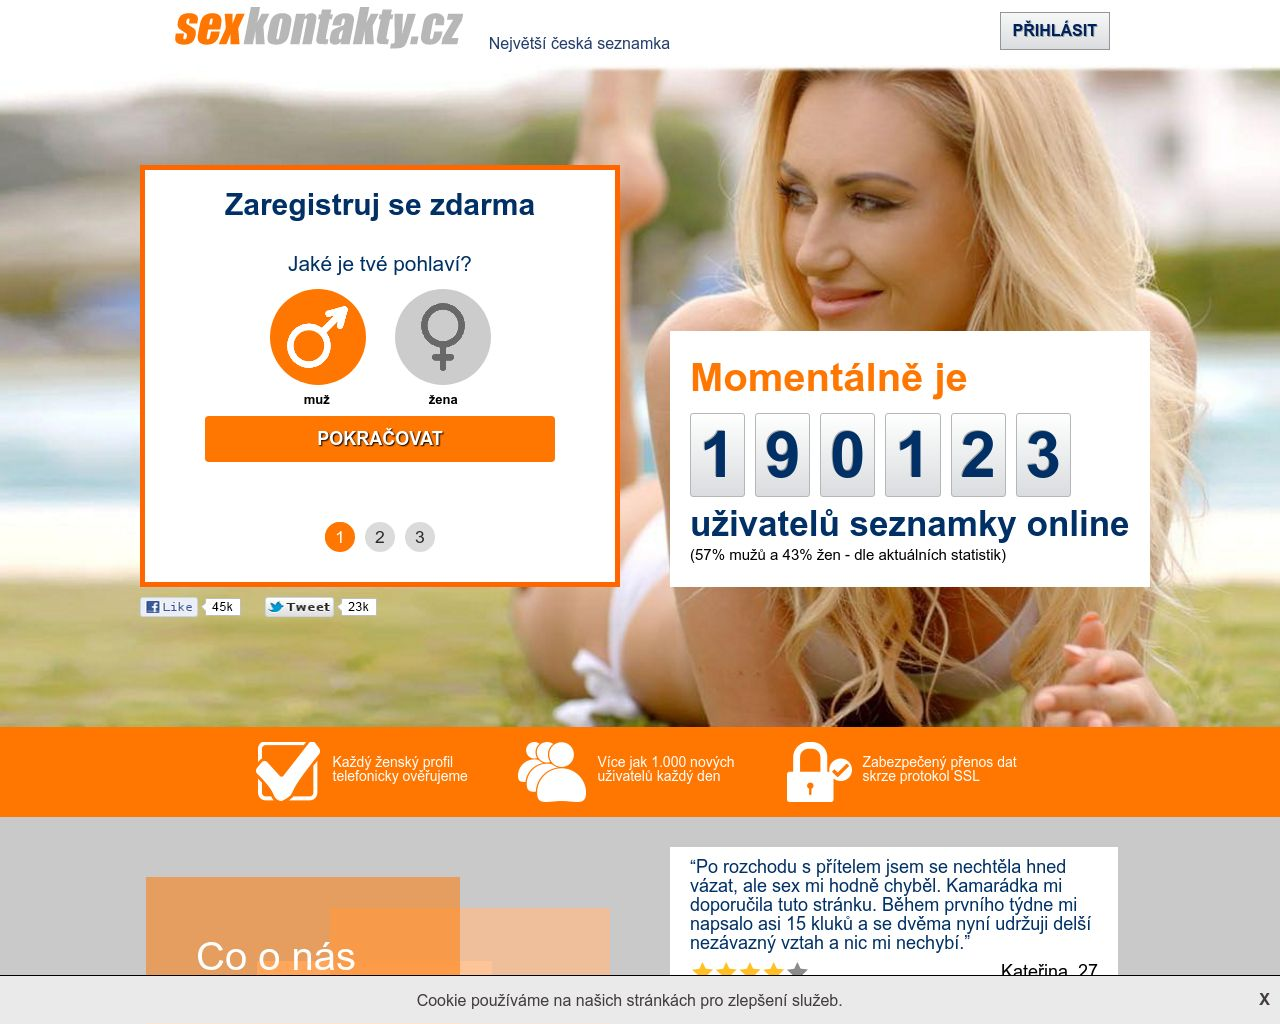 Site Image sexykontakty.cz v 1280x1024